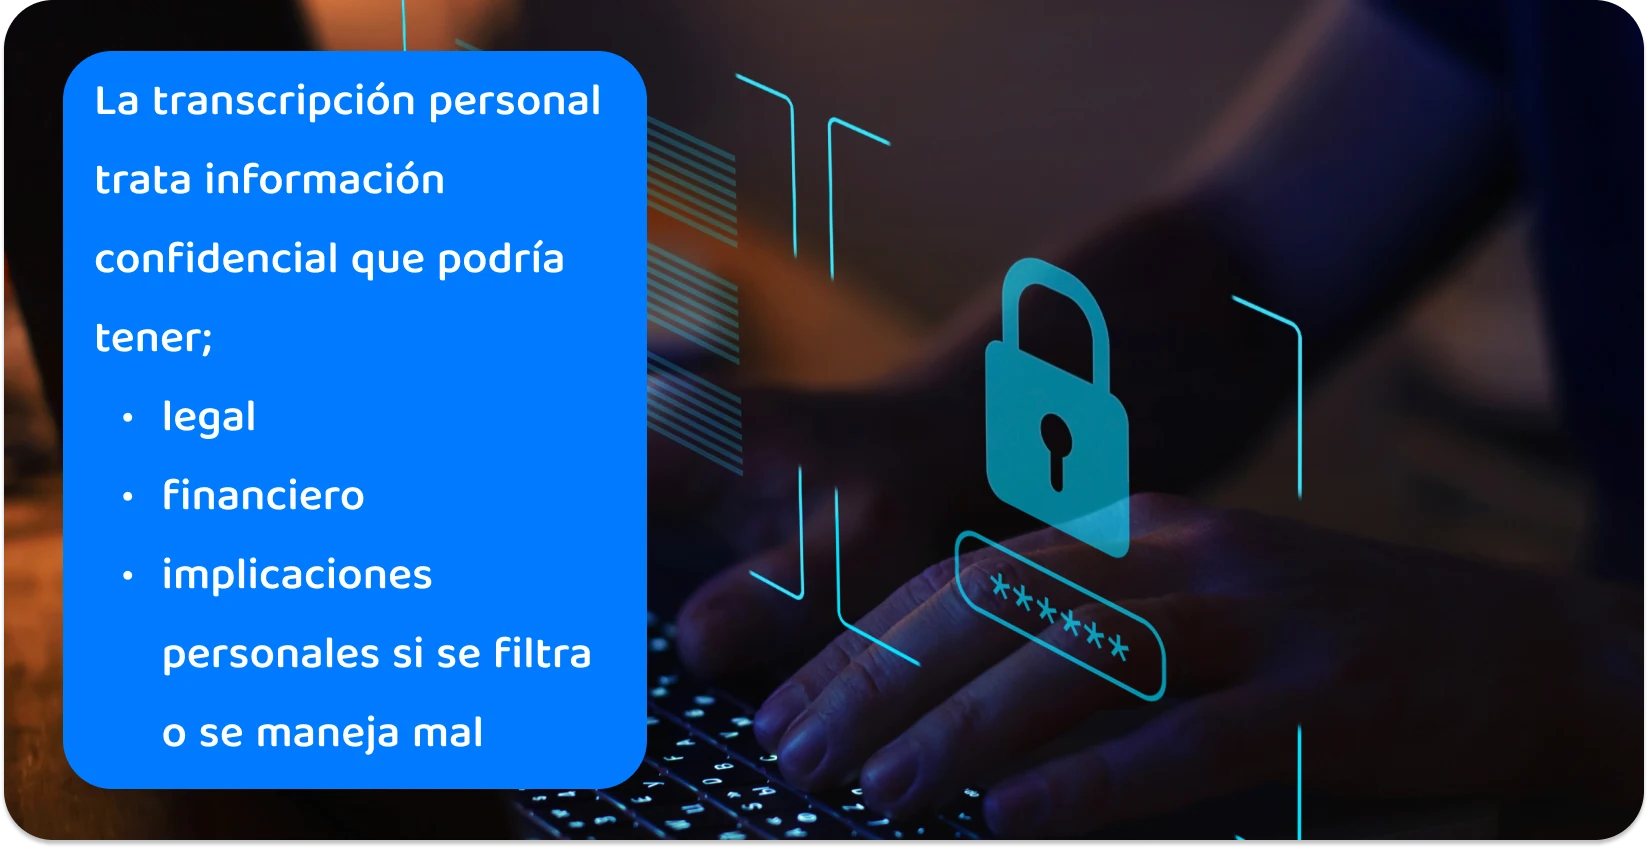 Manos escribiendo en un teclado con un icono de candado digital, lo que ilustra las prácticas seguras de transcripción personal de información confidencial.